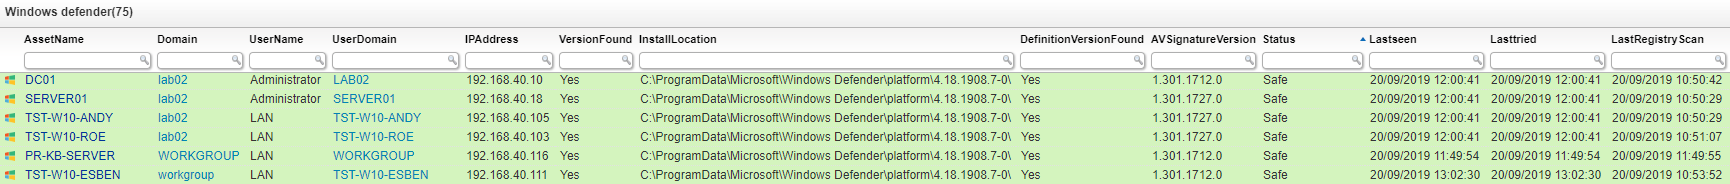 Windows defender audit